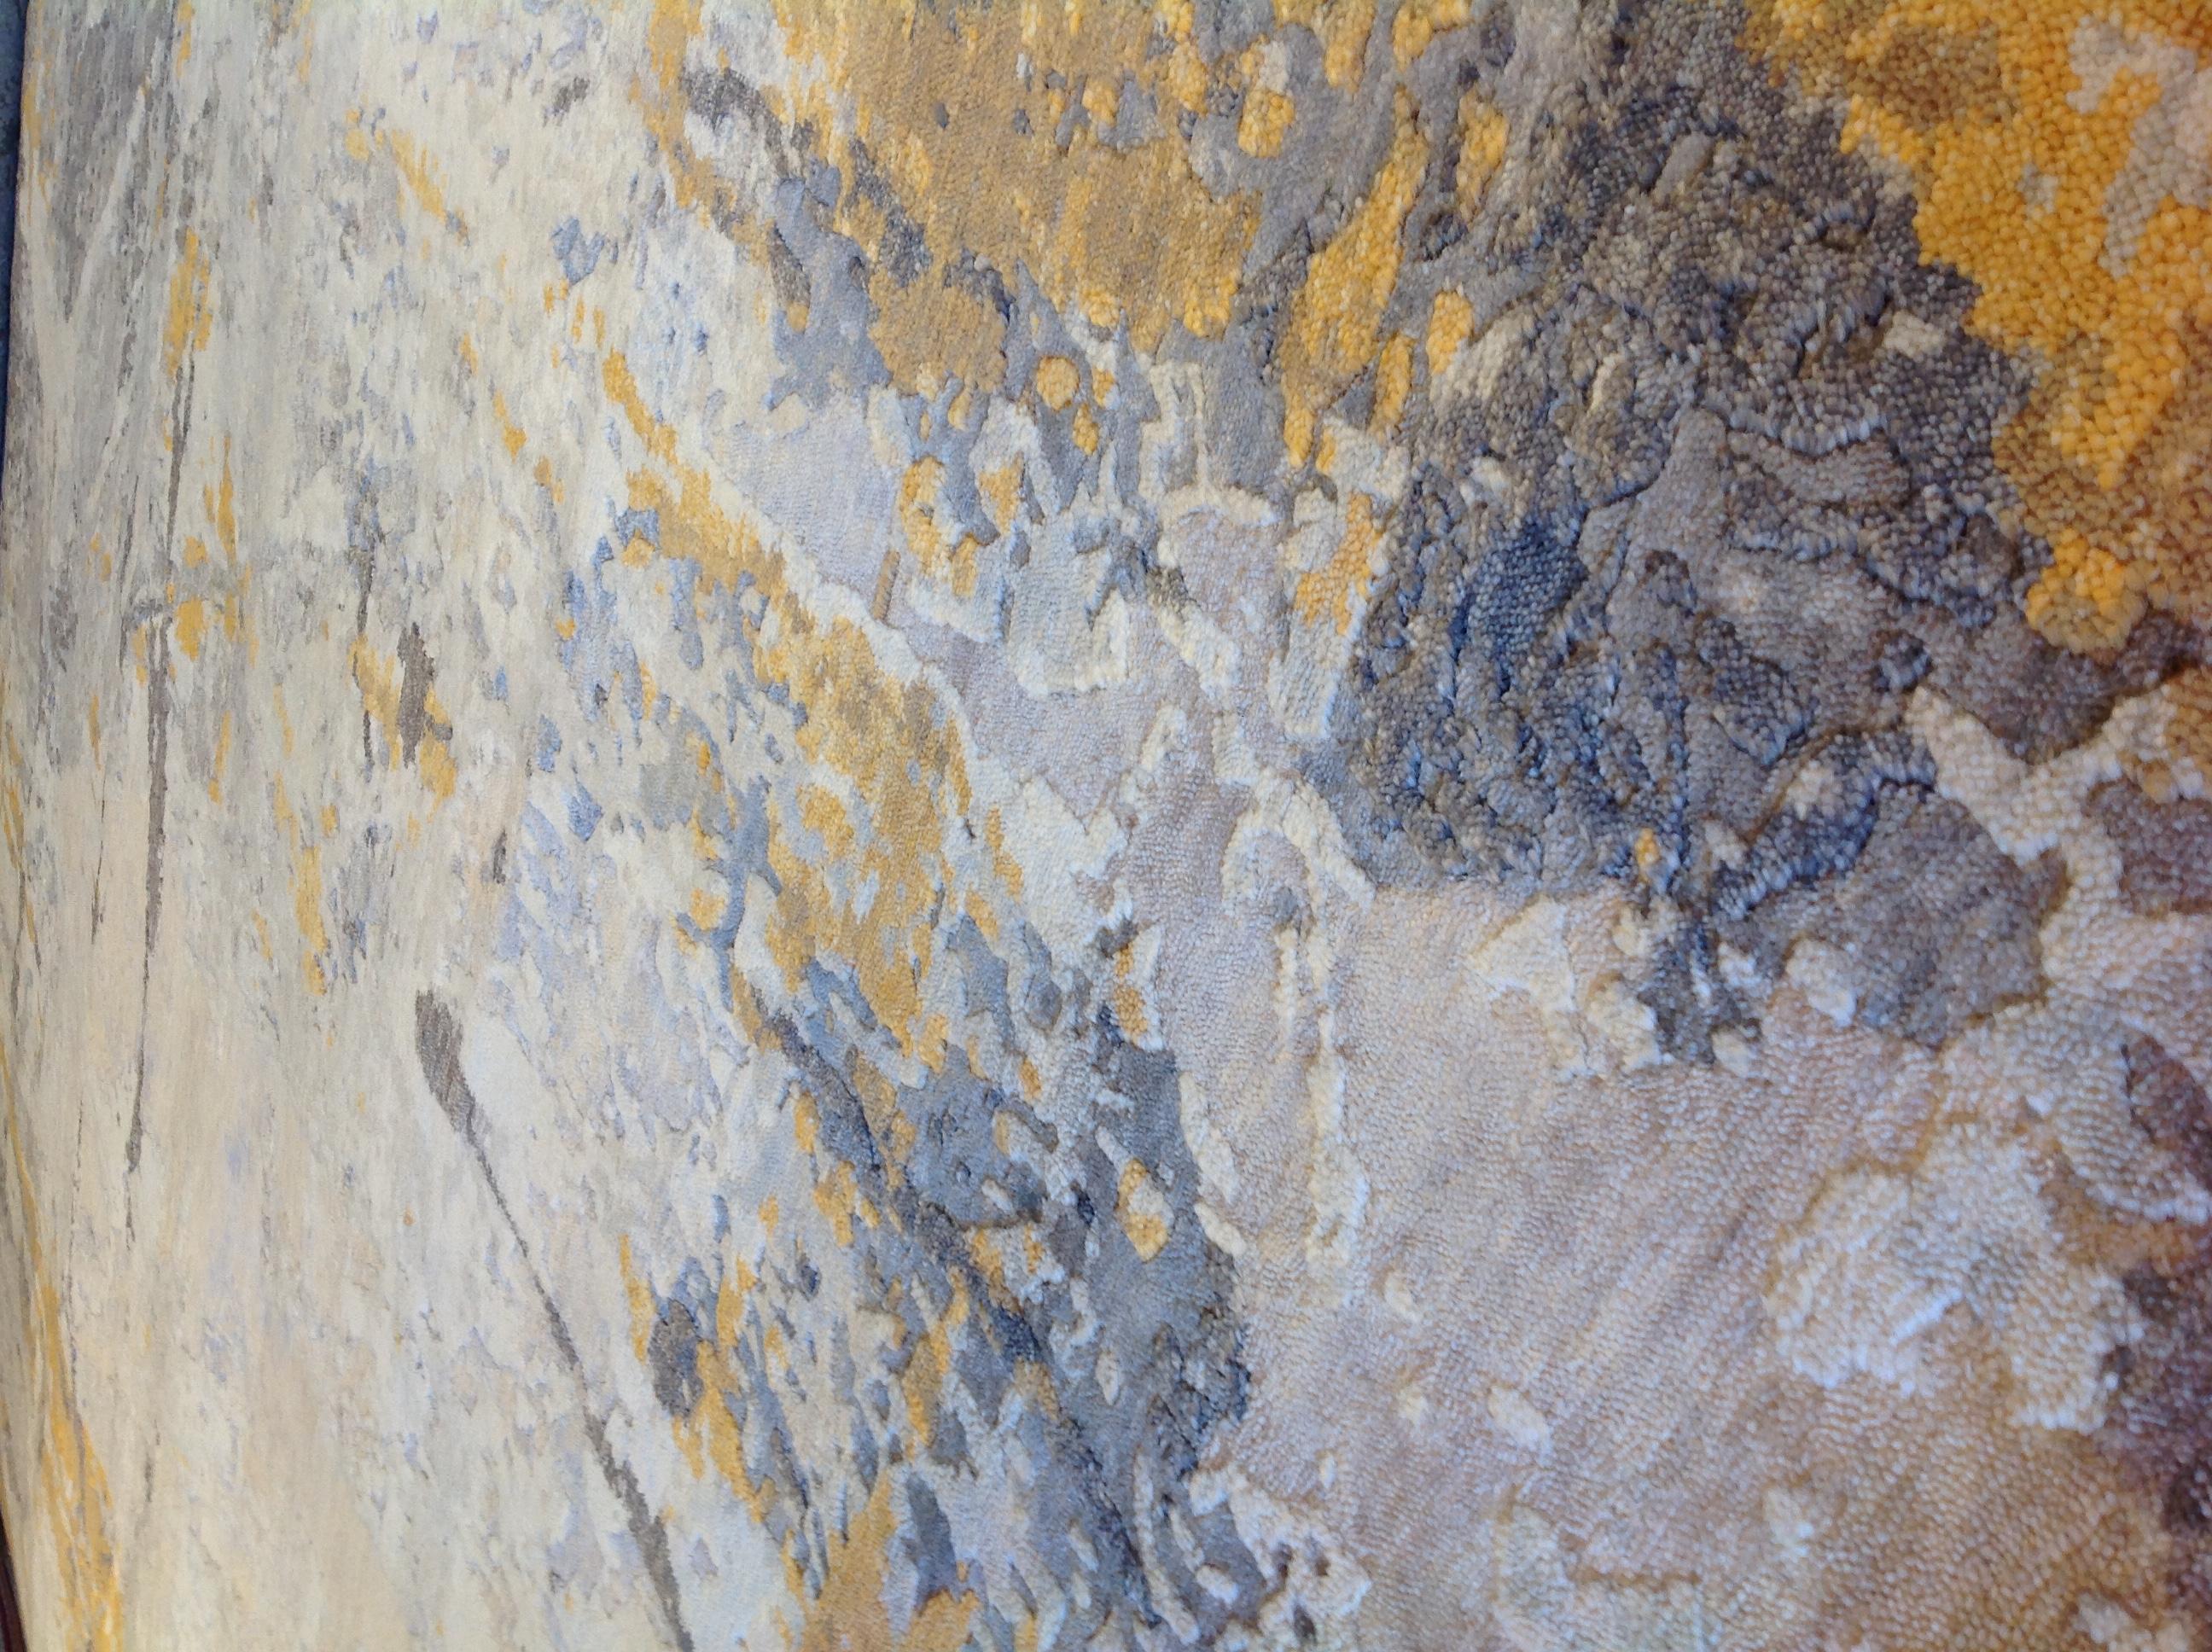 Gold- und elfenbeinfarbene Spritzer auf silbernem Hintergrund in einem schillernden abstrakten Design. Subtile Variationen in der Florhöhe sorgen für den 